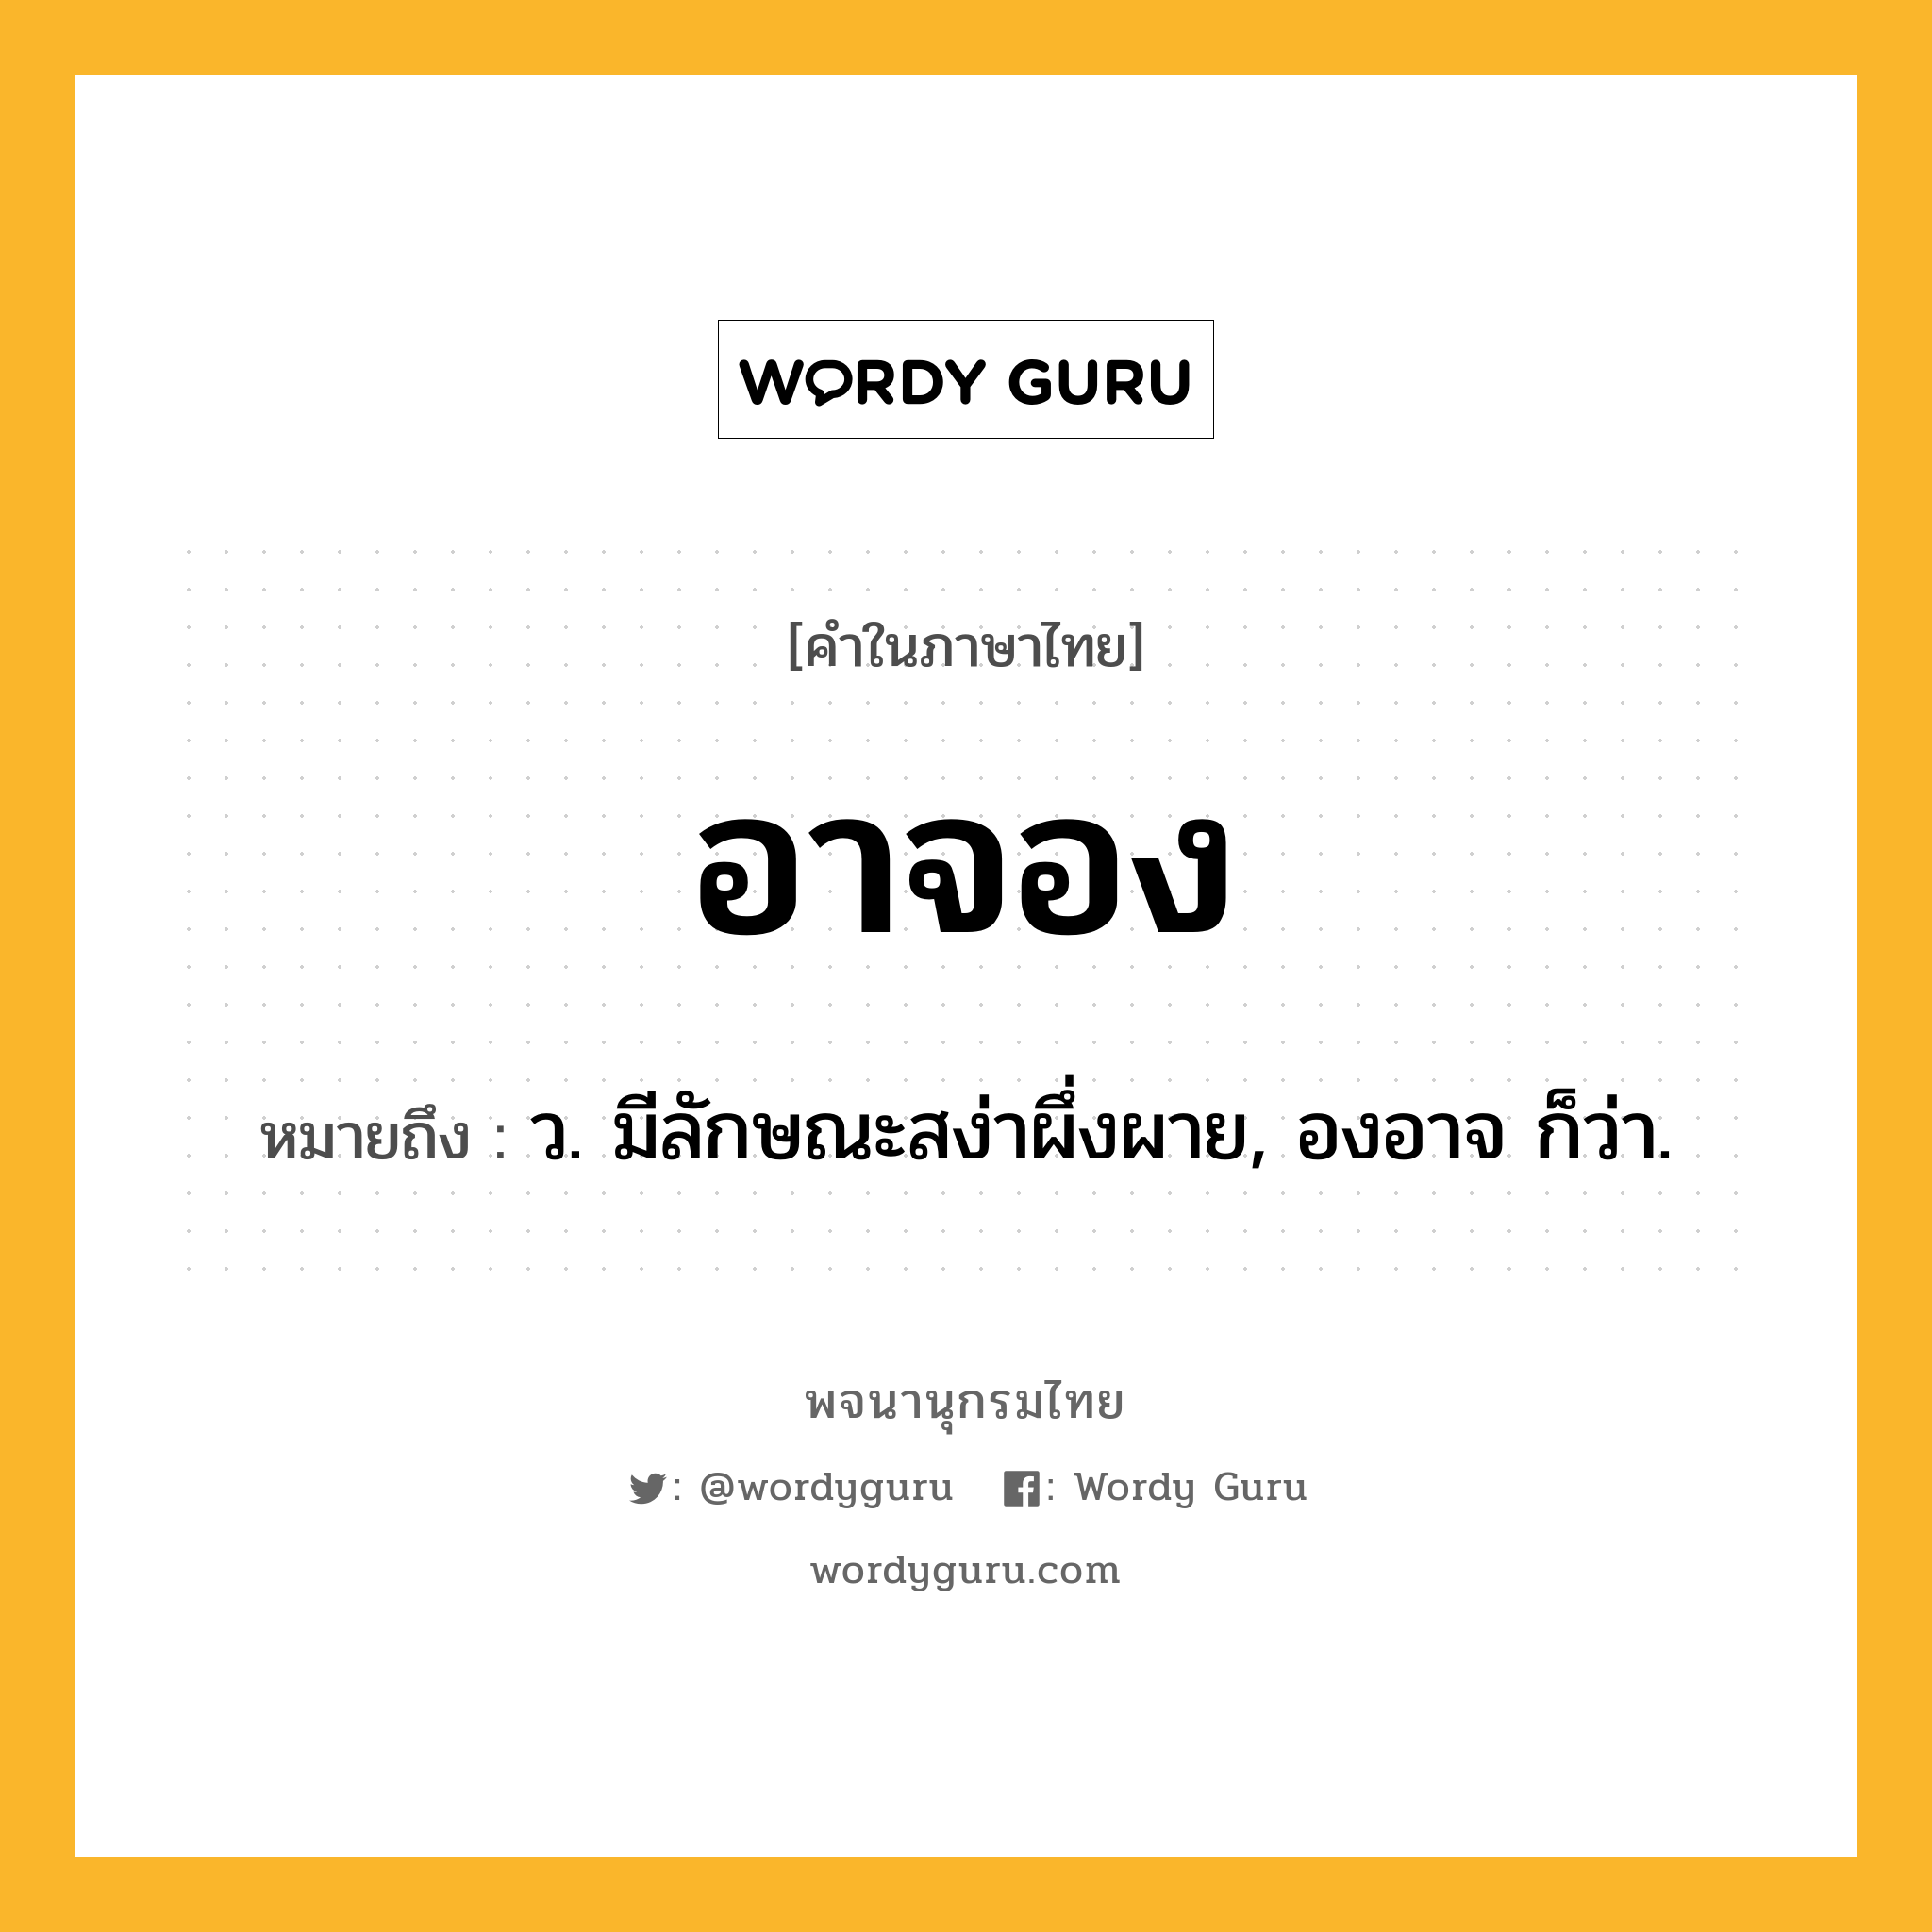 อาจอง ความหมาย หมายถึงอะไร?, คำในภาษาไทย อาจอง หมายถึง ว. มีลักษณะสง่าผึ่งผาย, องอาจ ก็ว่า.